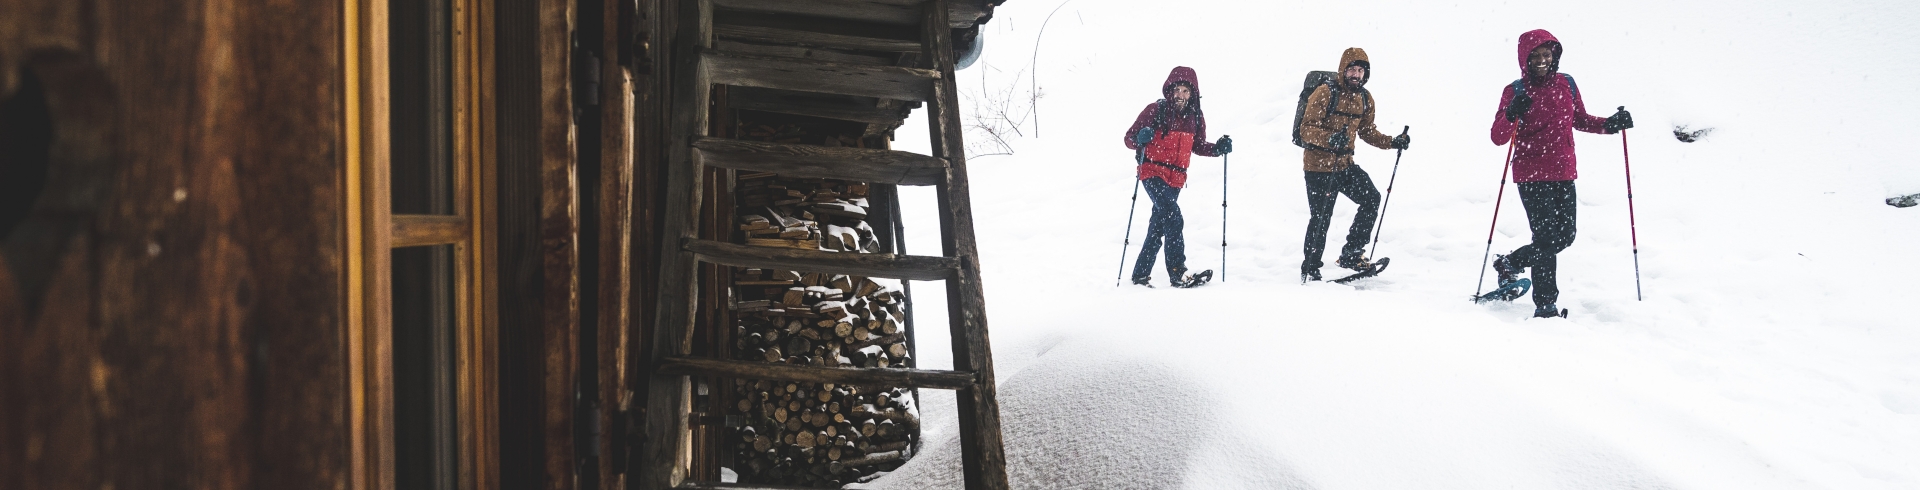 Sécurité : lire la neige pour randonner l'hiver en toute sécurité